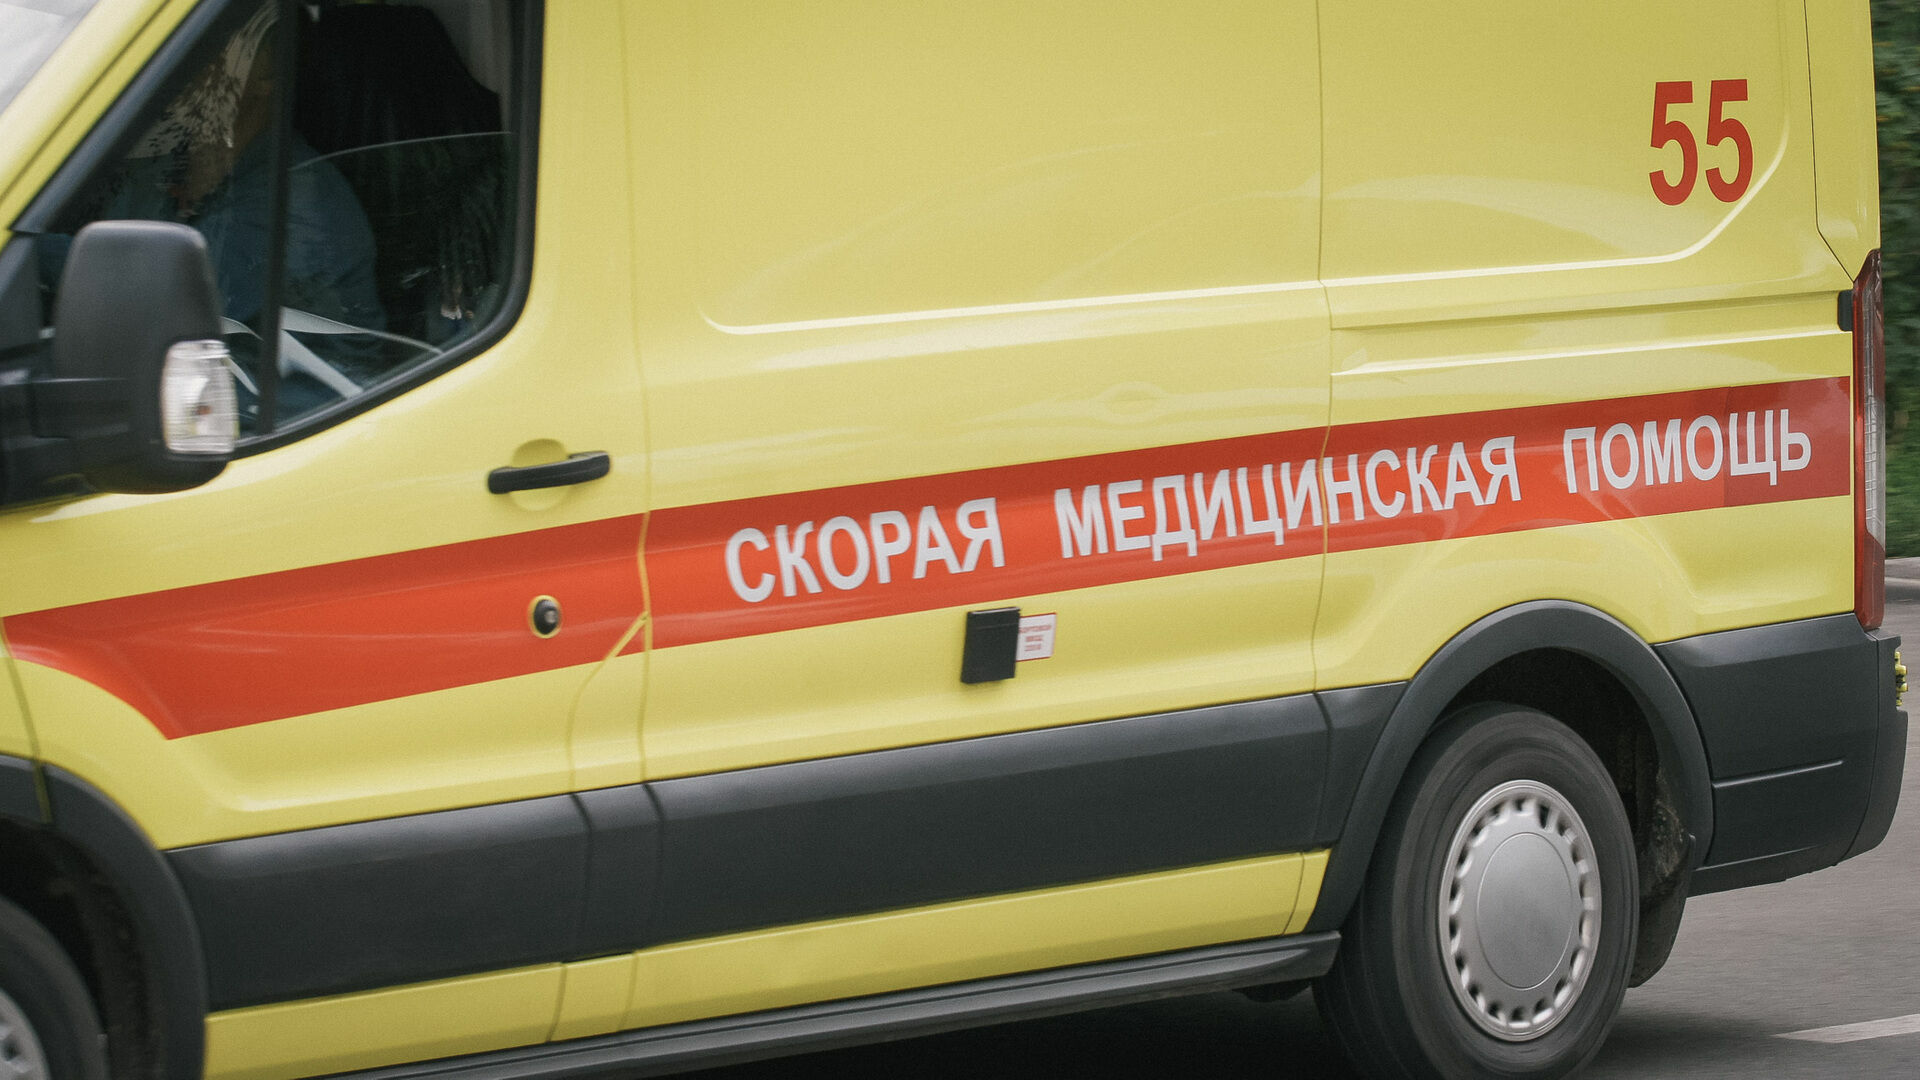 Стало известно о состоянии пострадавших при взрыве газа в Нижнем Новгороде